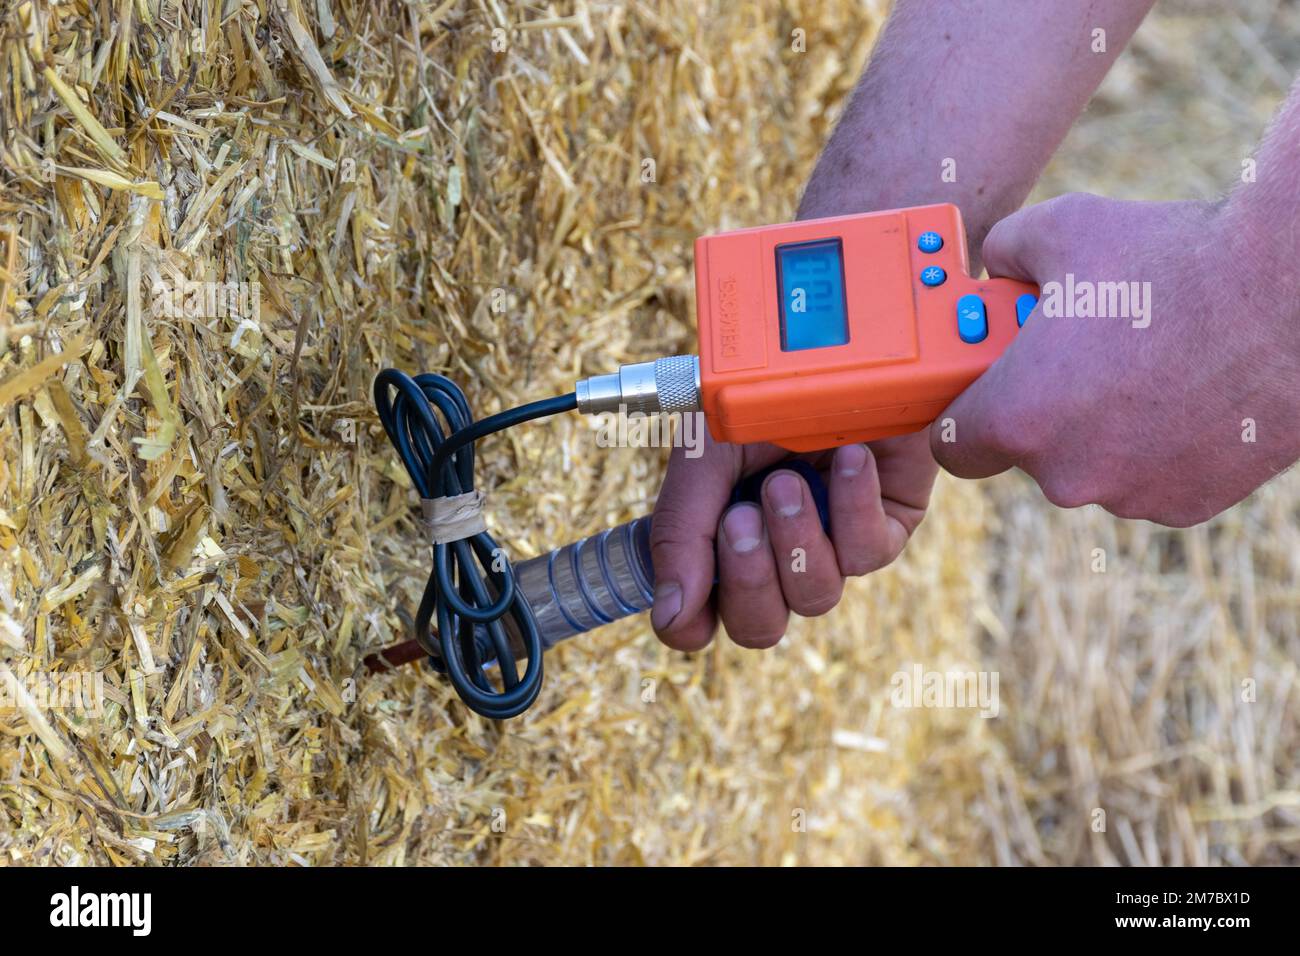 Il contadino rileva la temperatura di una balla di paglia con una sonda per assicurarsi che non si surriscaldi e che possa essere impilata in modo sicuro. North Yorkshire, Regno Unito. Foto Stock